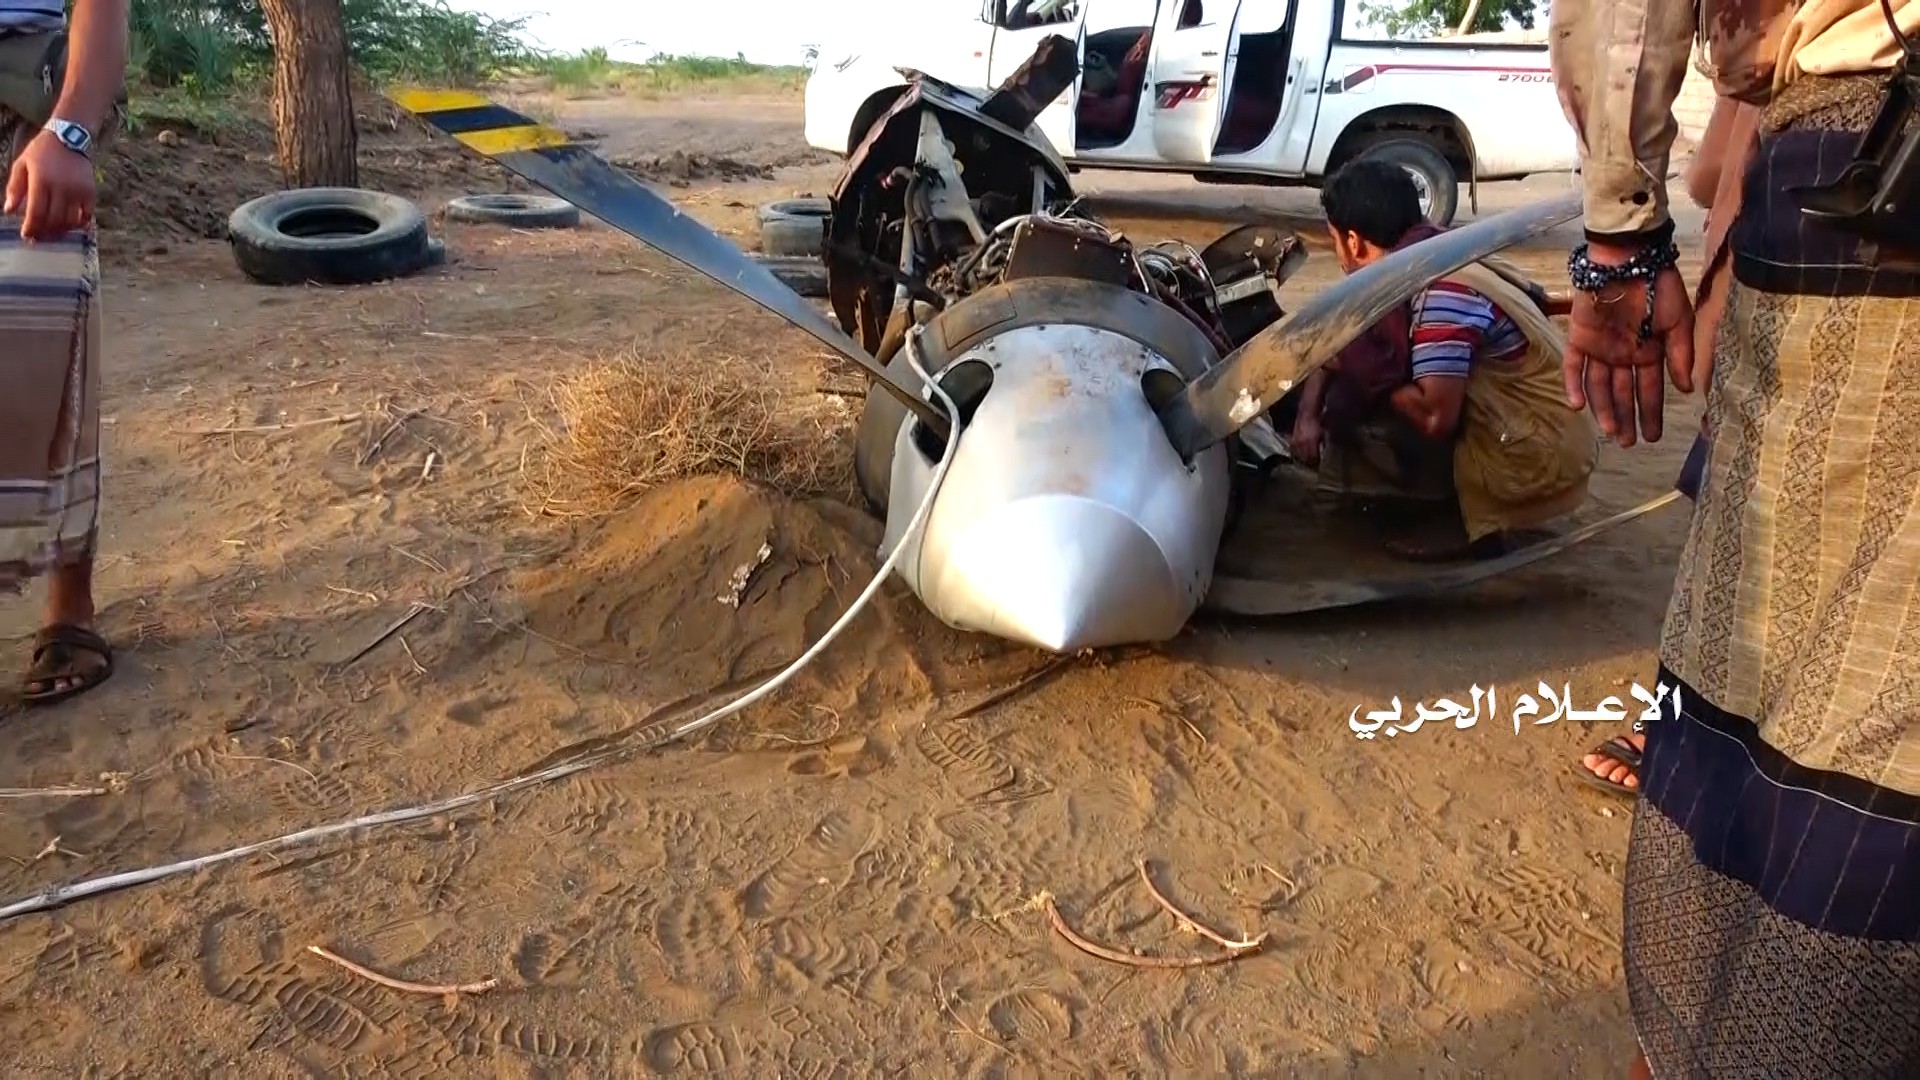 الحديدة – الدفاع الجوي يسقط طائرة إستطلاعية نوع 1 MQ9 في قرية الزعفران شرقي مدينة الحديدة